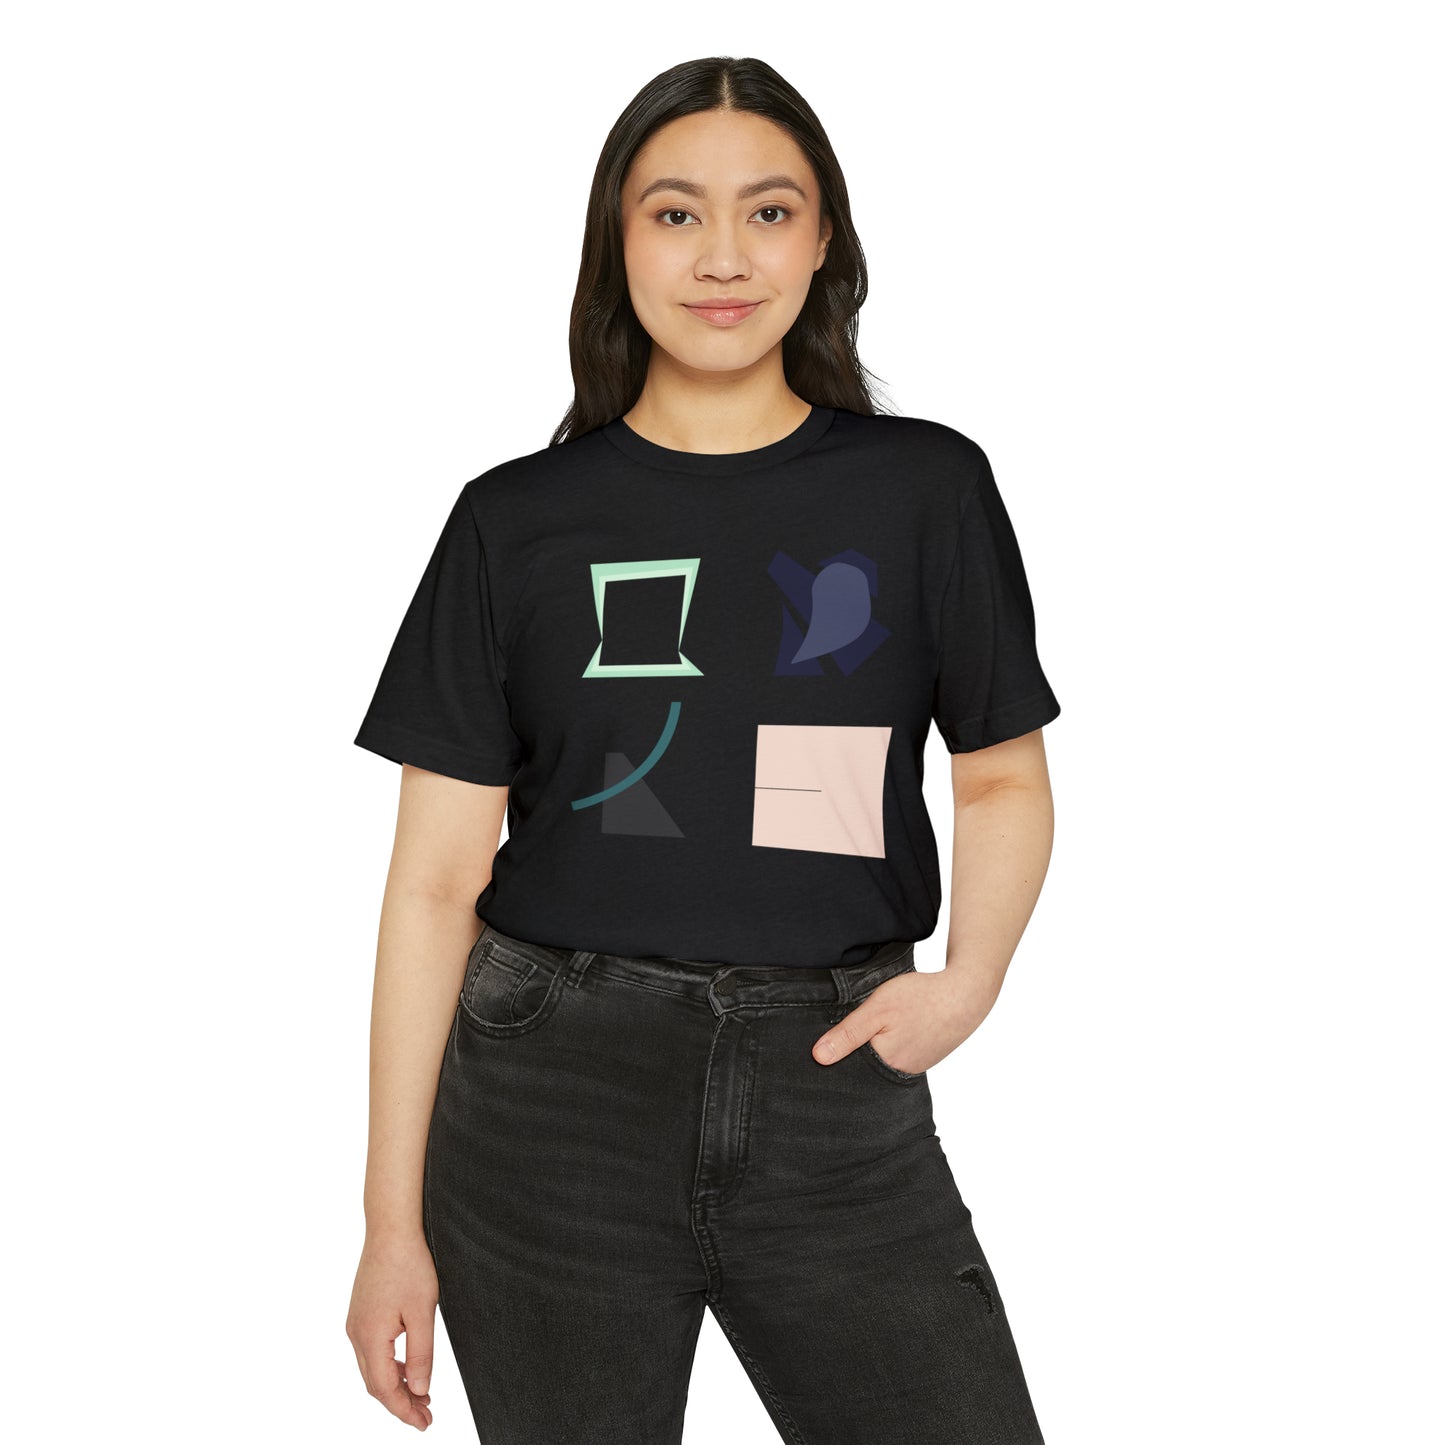 MINIMAL SHAPES 101 - Camiseta ecológica reciclada unisex